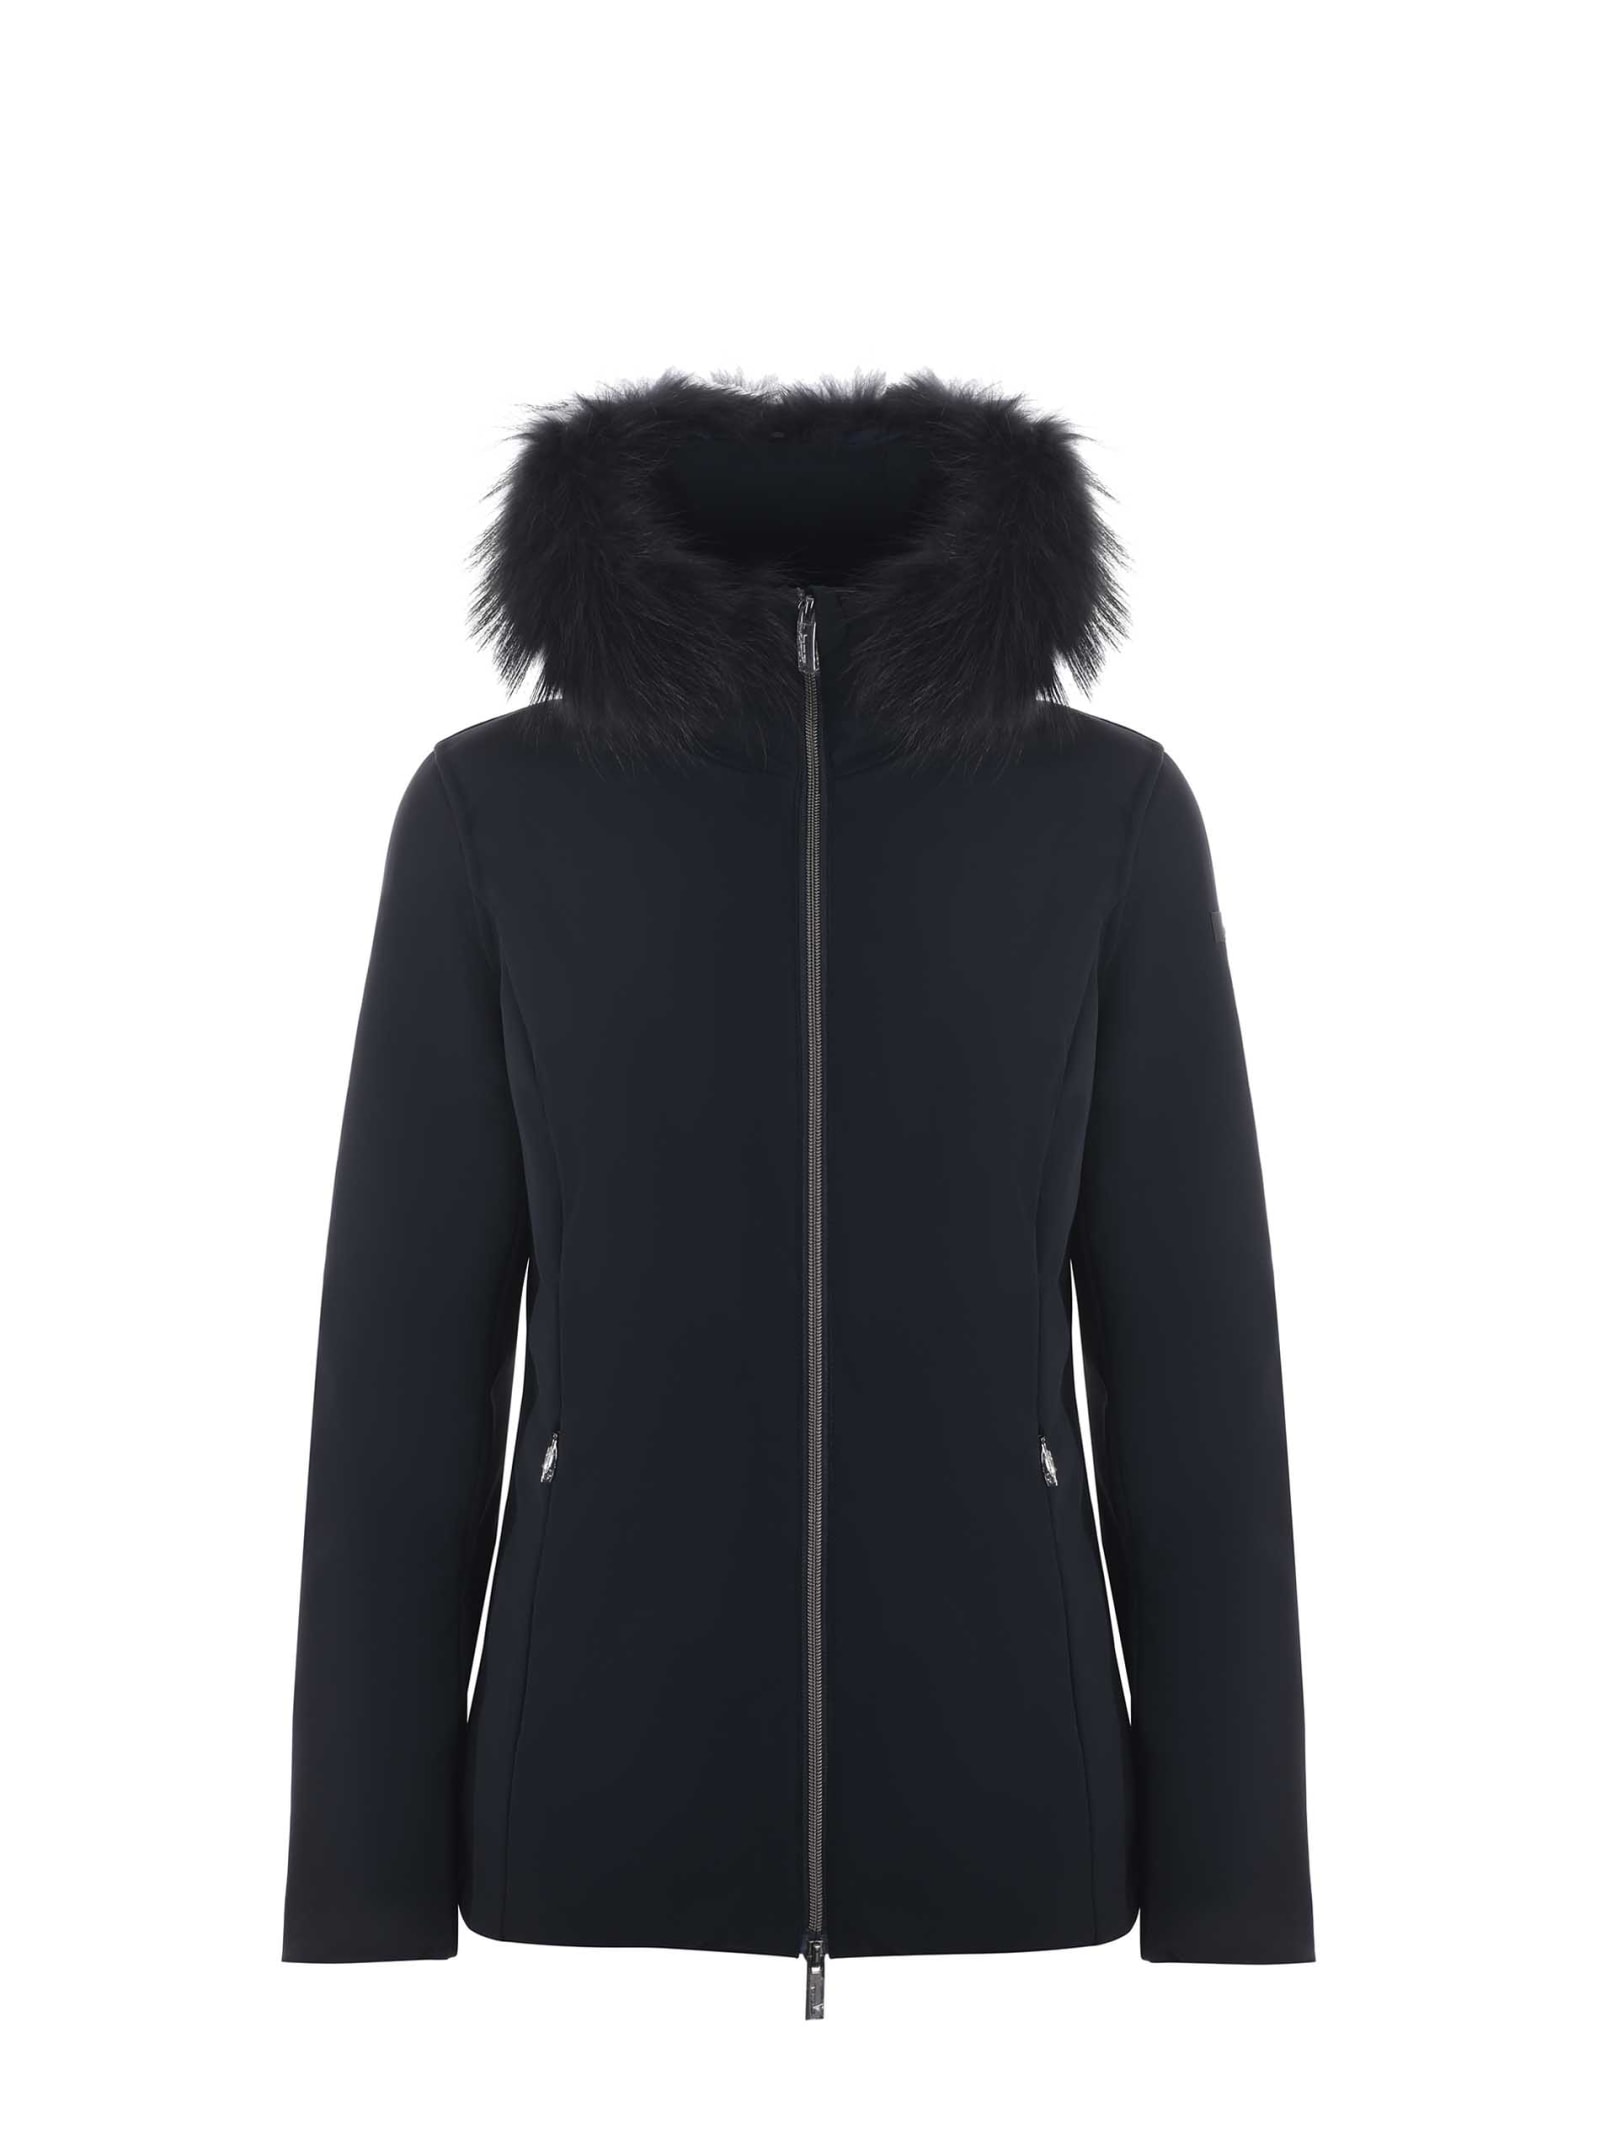 rrd - roberto ricci design rrd winter storm fur down jacket